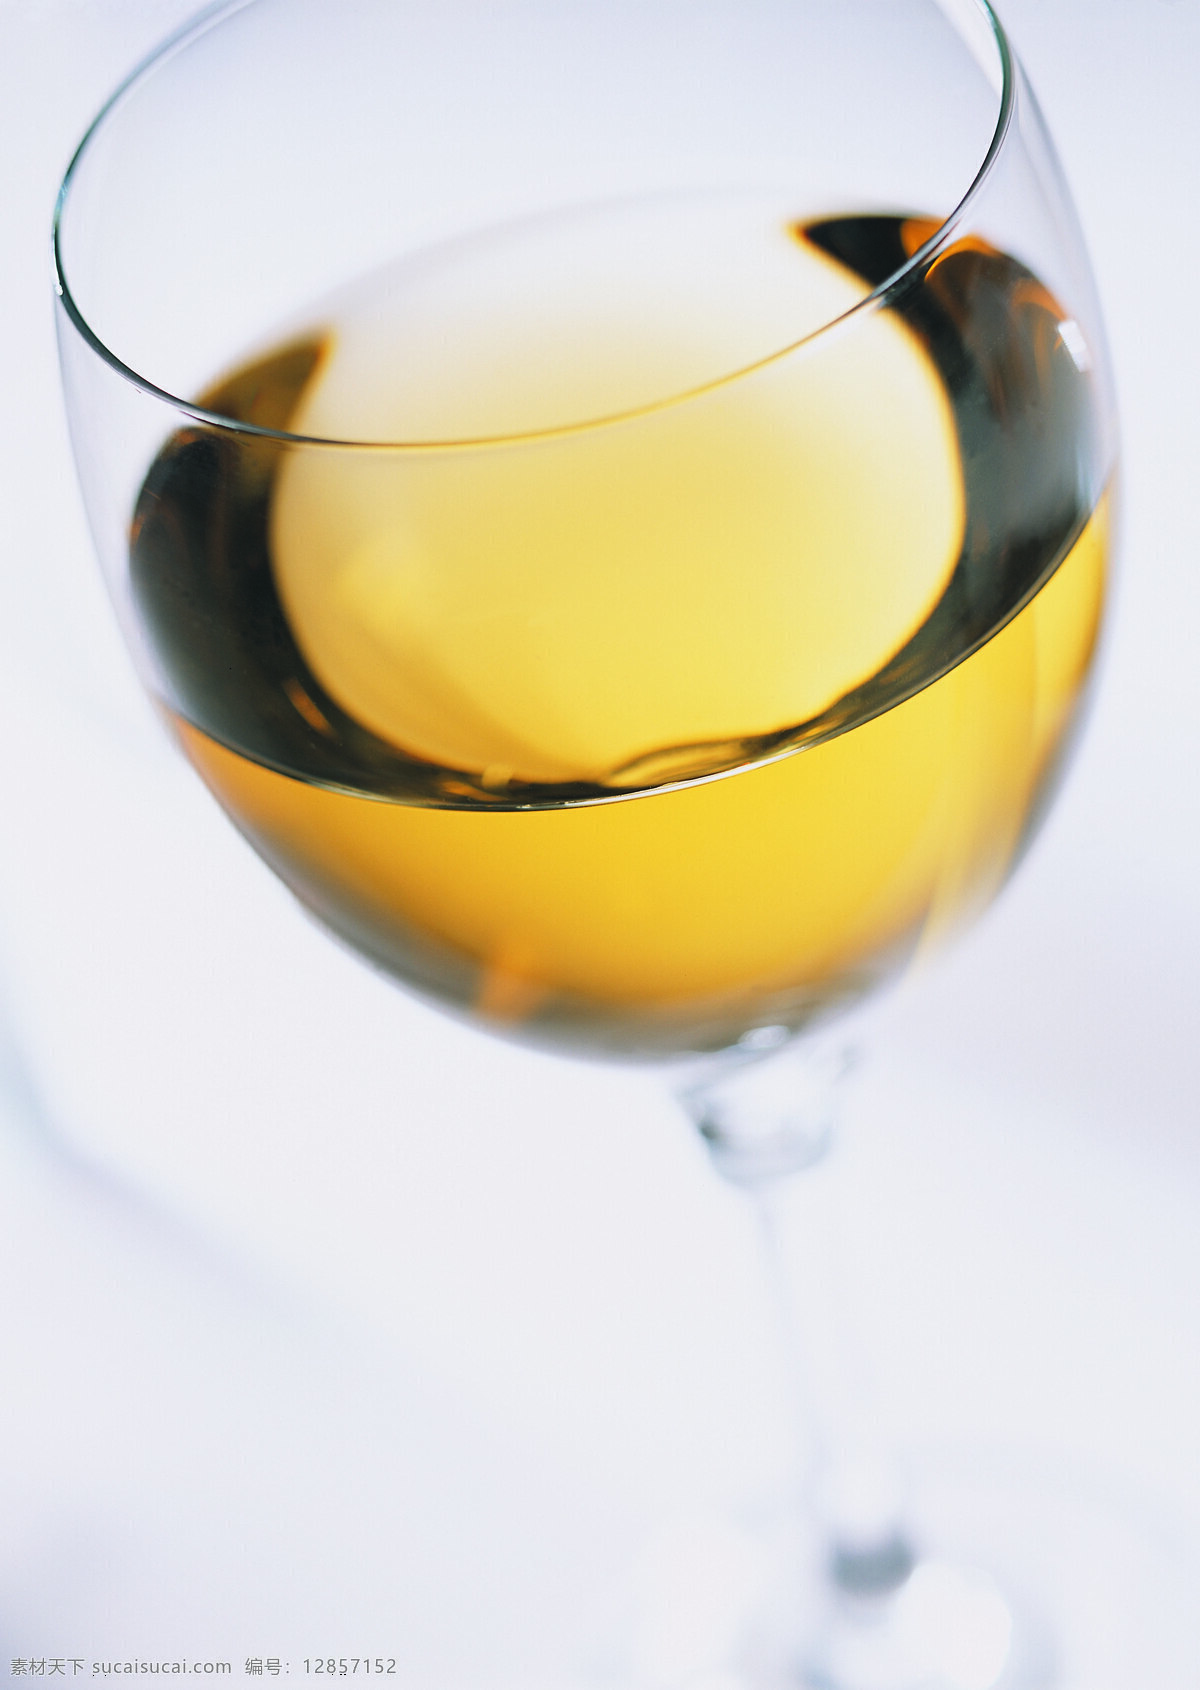 黄色 葡萄酒 俯视图 高脚杯 西餐 洋酒图片 酒杯 酒瓶 尊贵 高贵 高雅 高清 广告 商业摄影 饮料酒水 餐饮美食 高清图片 酒类图片